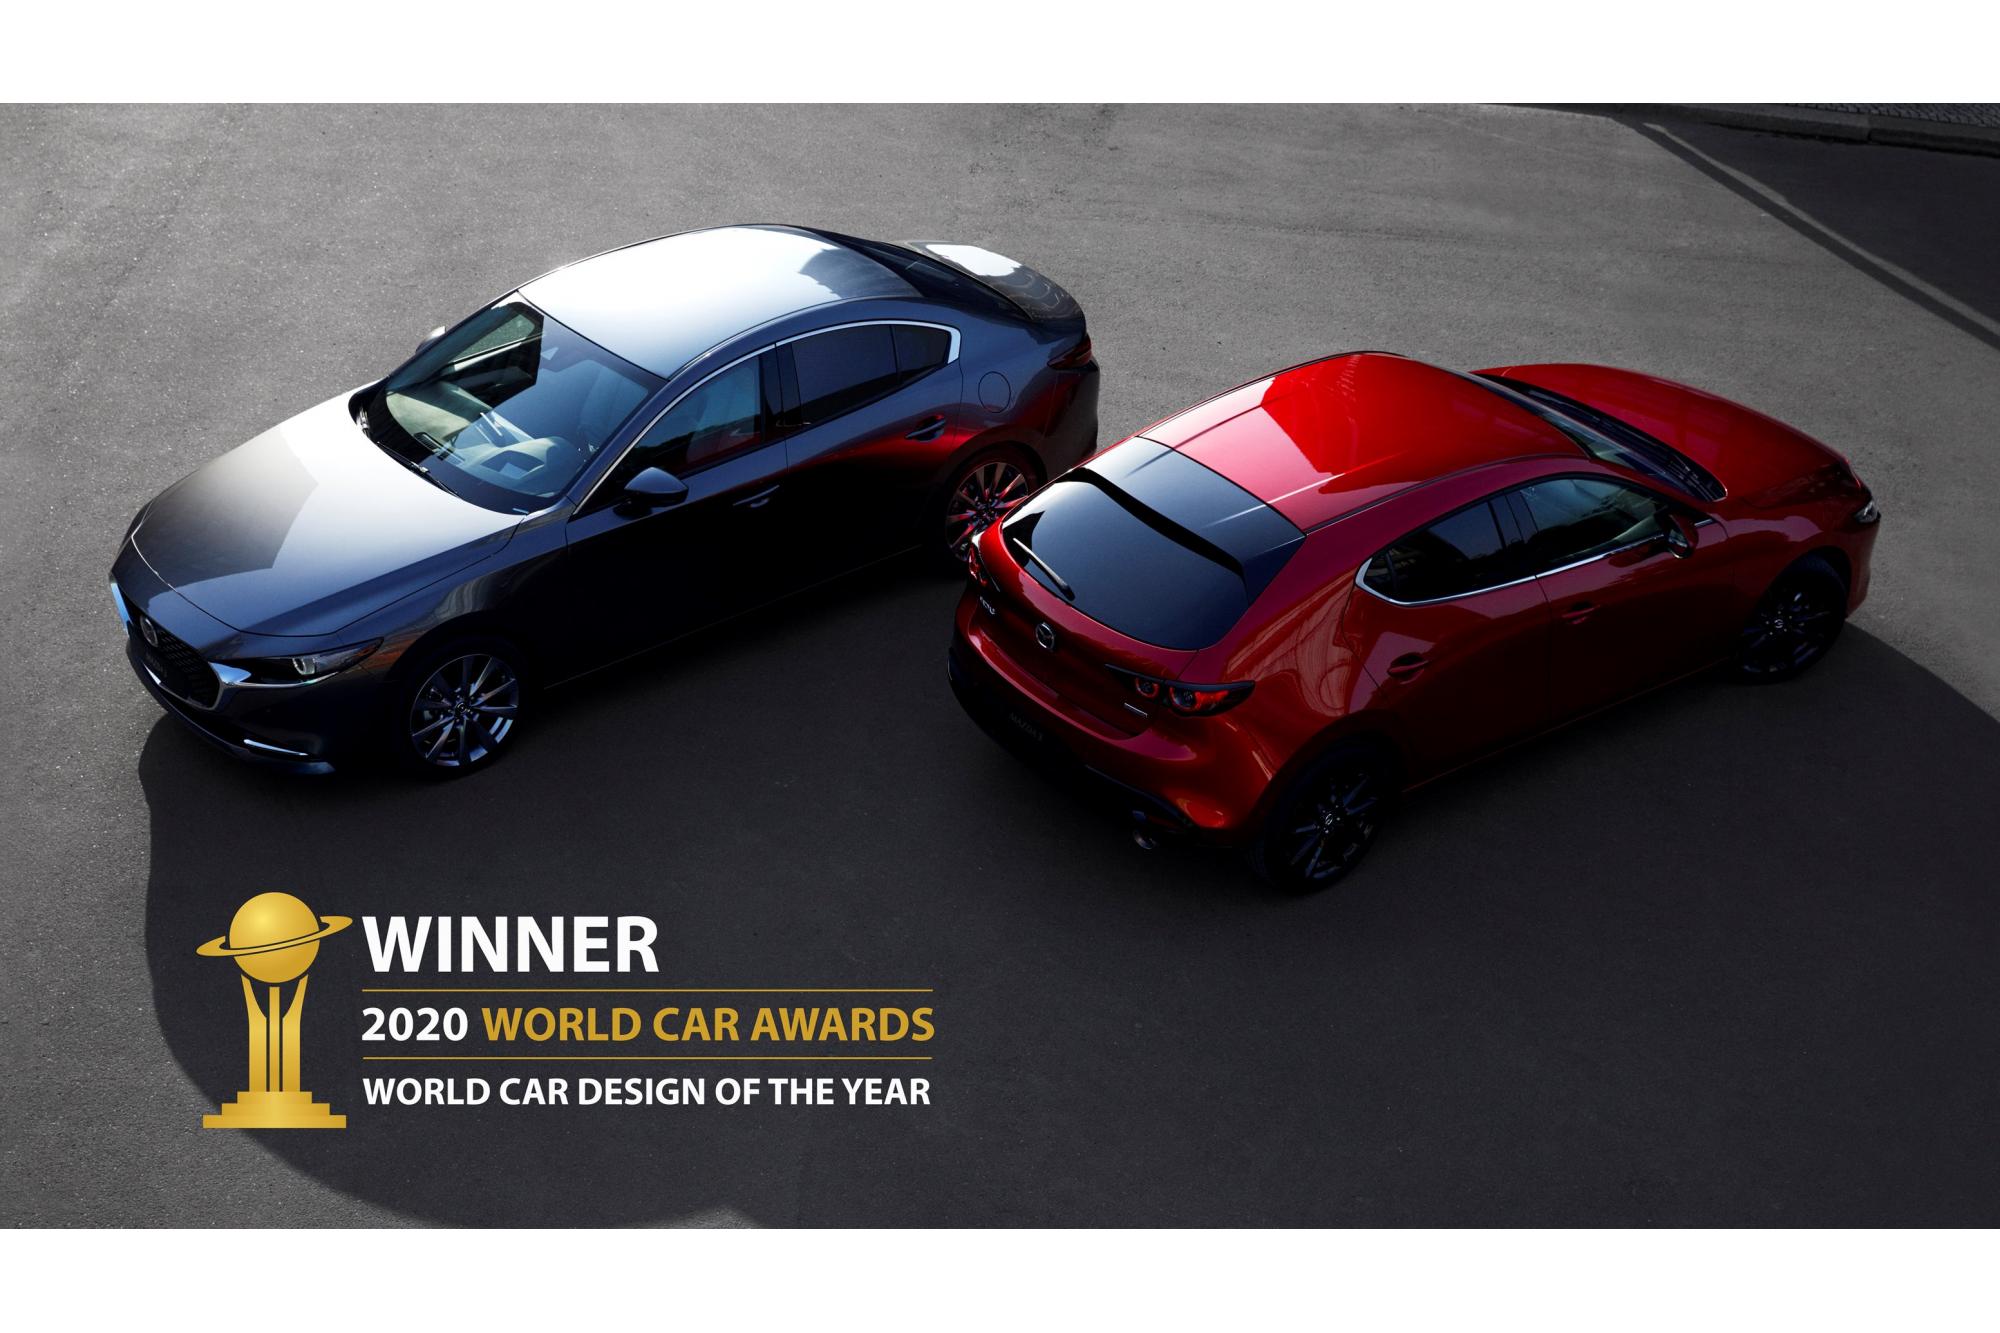 Στο Mazda3 το βραβείο World Car Design of the Year για το 2020